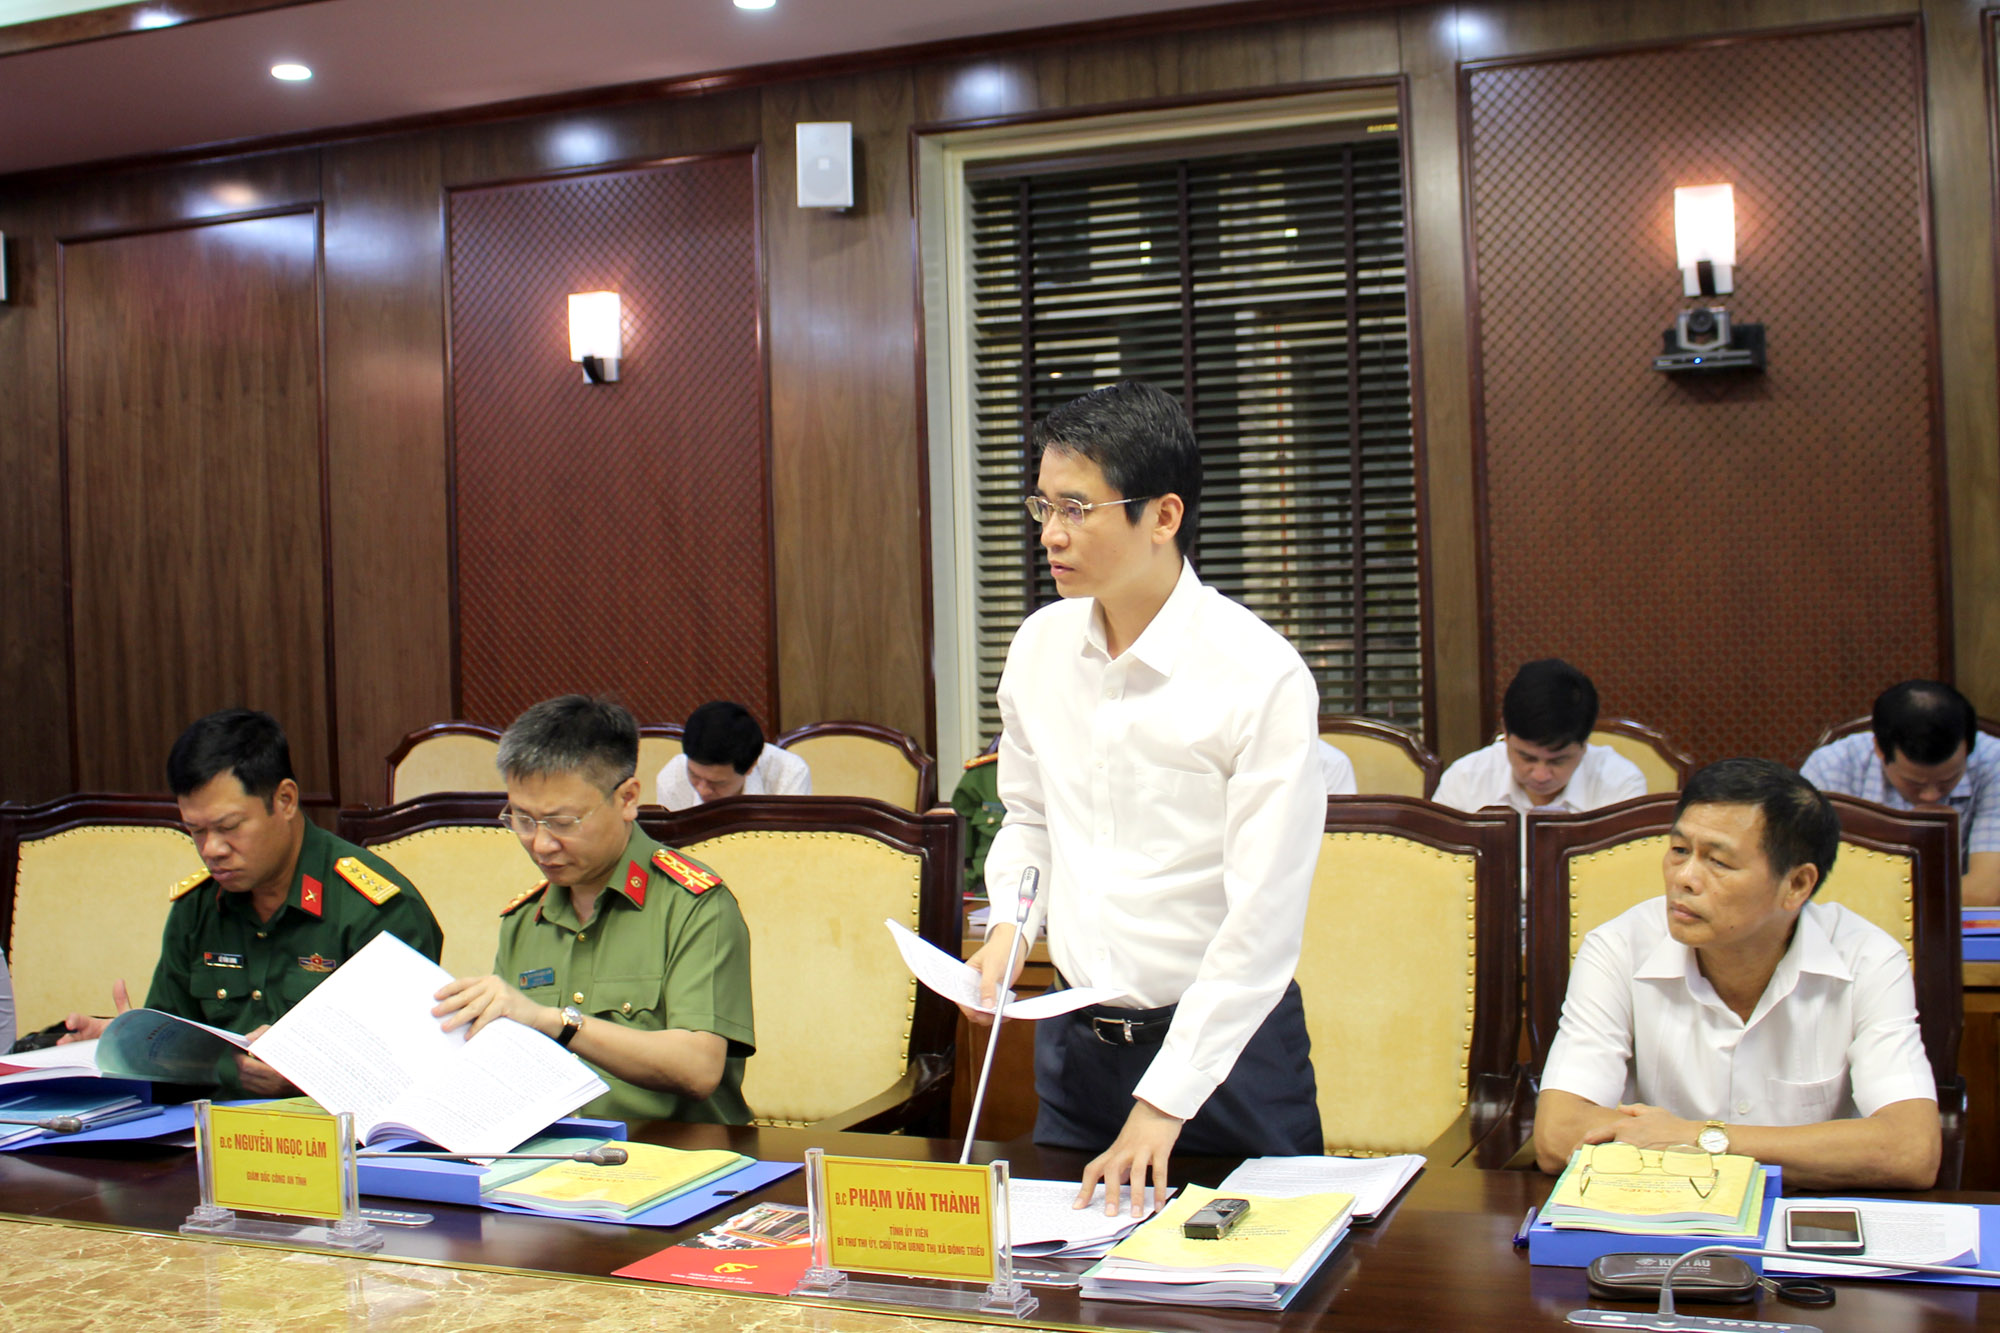 Đồng chí Phạm Văn Thành, Bí thư Thị ủy, Chủ tịch UBND TX Đông Triều, báo cáo công tác chuẩn bị đại hội.